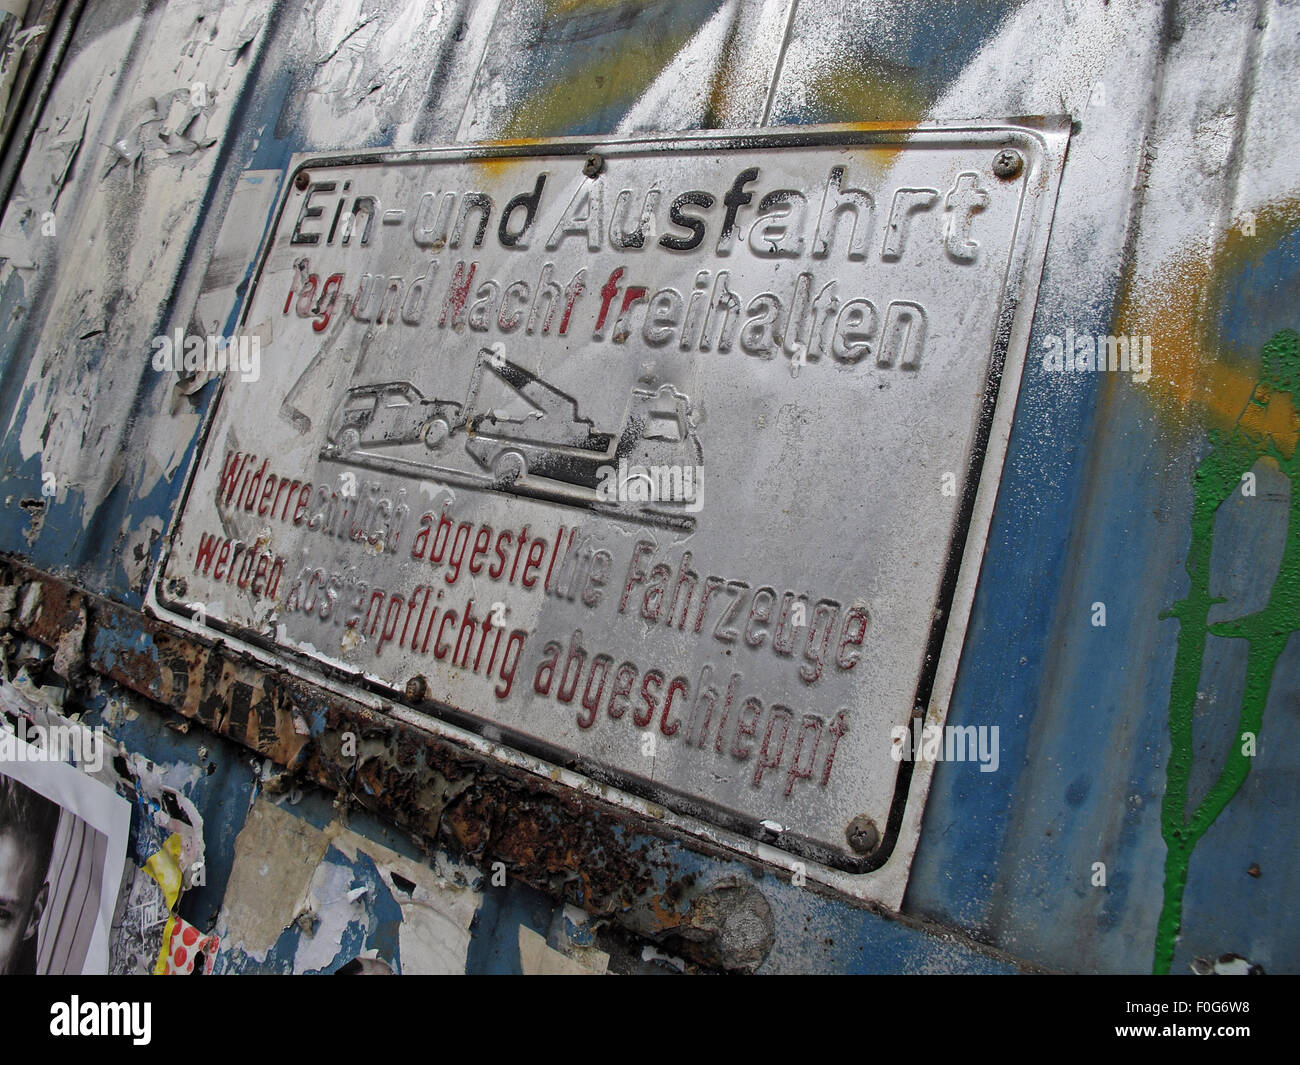 Berlin Mitte,Street art sur les murs,Allemagne Ein-und Ausfahrt signer pulvérisés avec de l'écriture Graffiti Banque D'Images